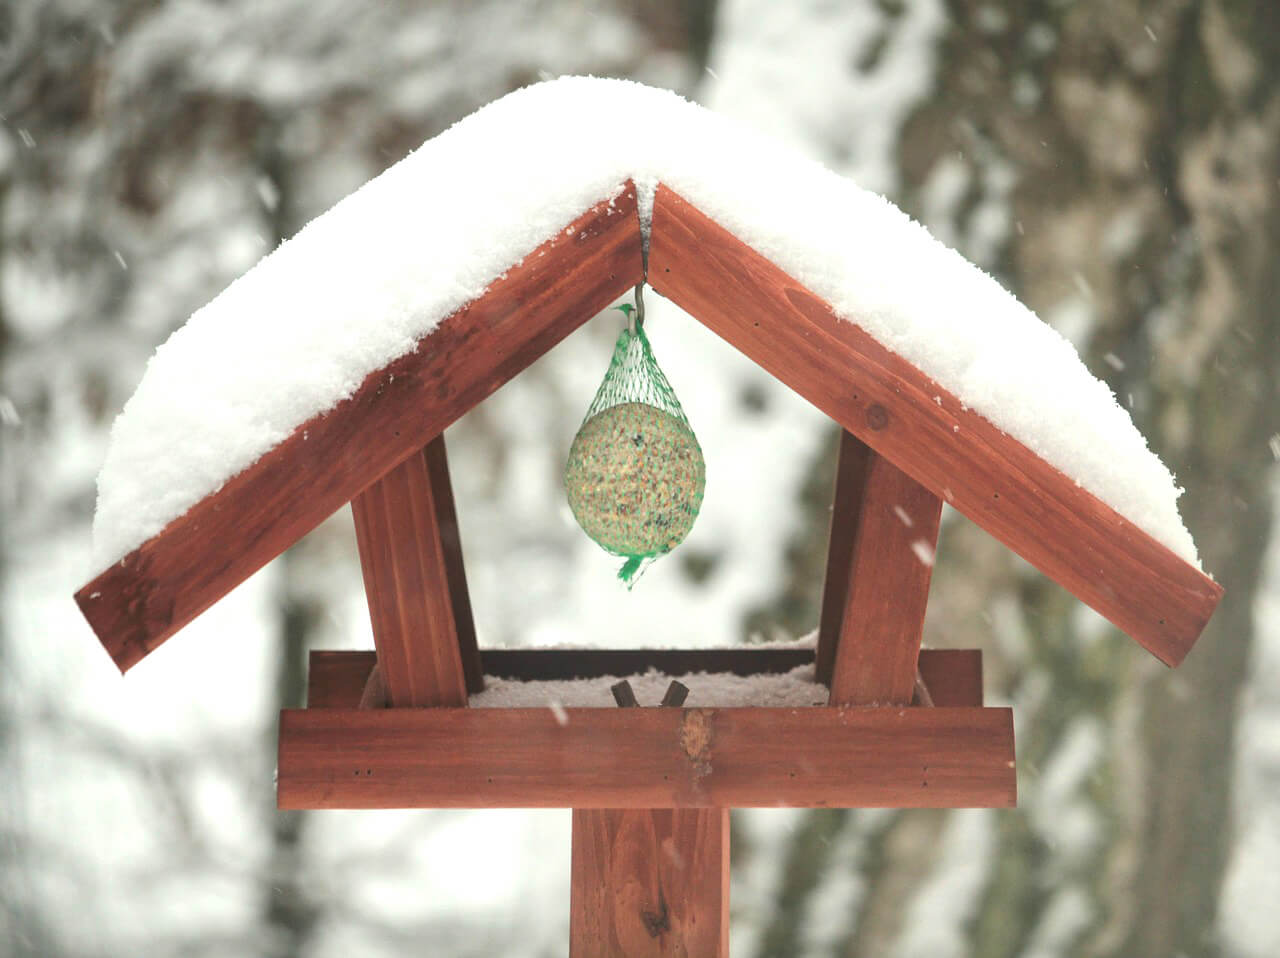 Une mangeoire ou un abri connecté pour nourrir les oiseaux en hiver, mais  pourquoi faire ? - NeozOne